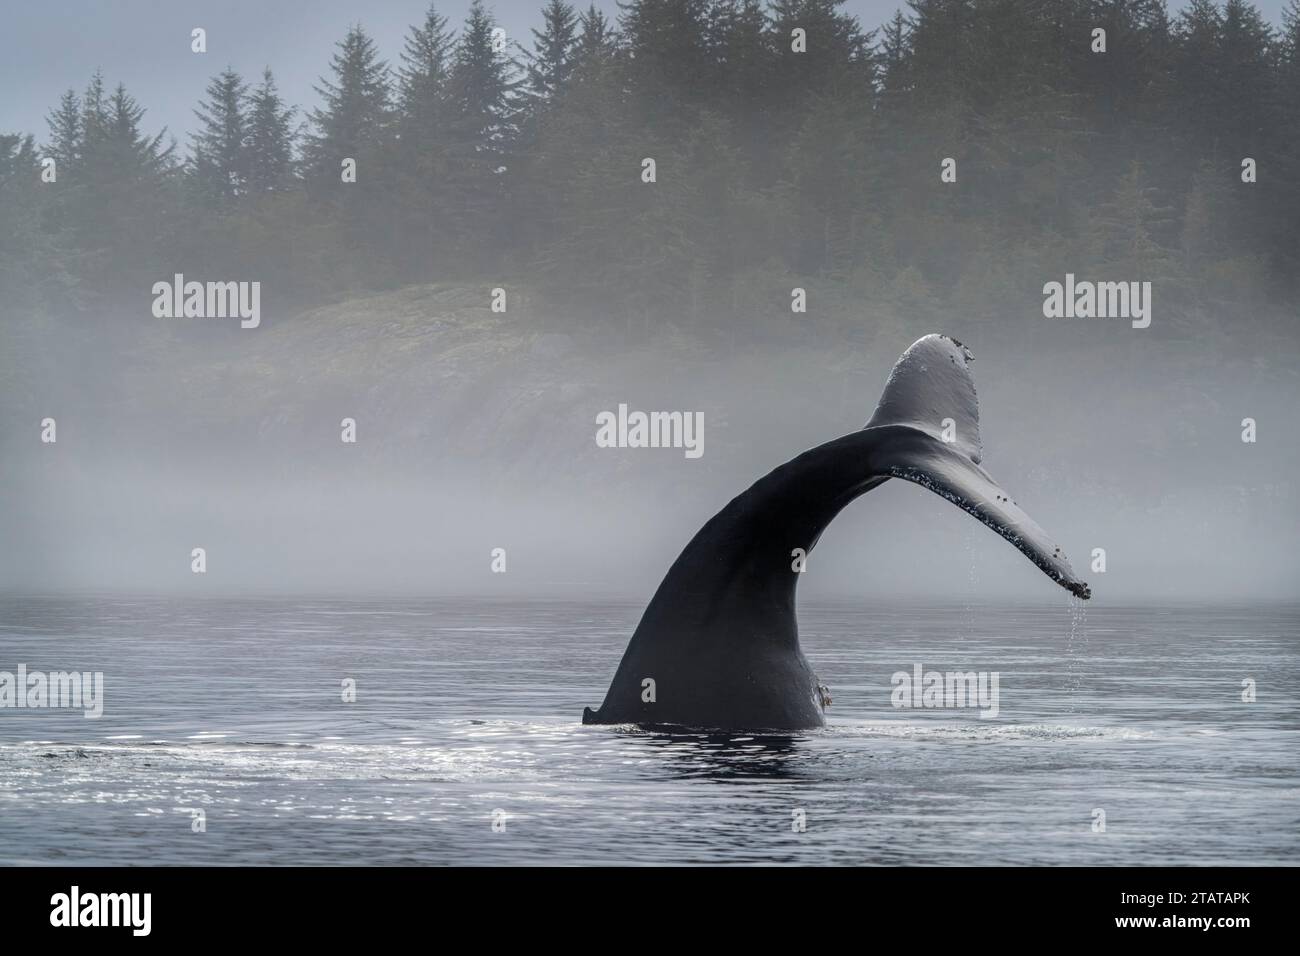 Balena megattere che mostra la sua coda mentre riposa al largo dell'Isola di Vancouver settentrionale, territorio delle prime Nazioni, territori tradizionali del Kwakwaka'wakw Foto Stock